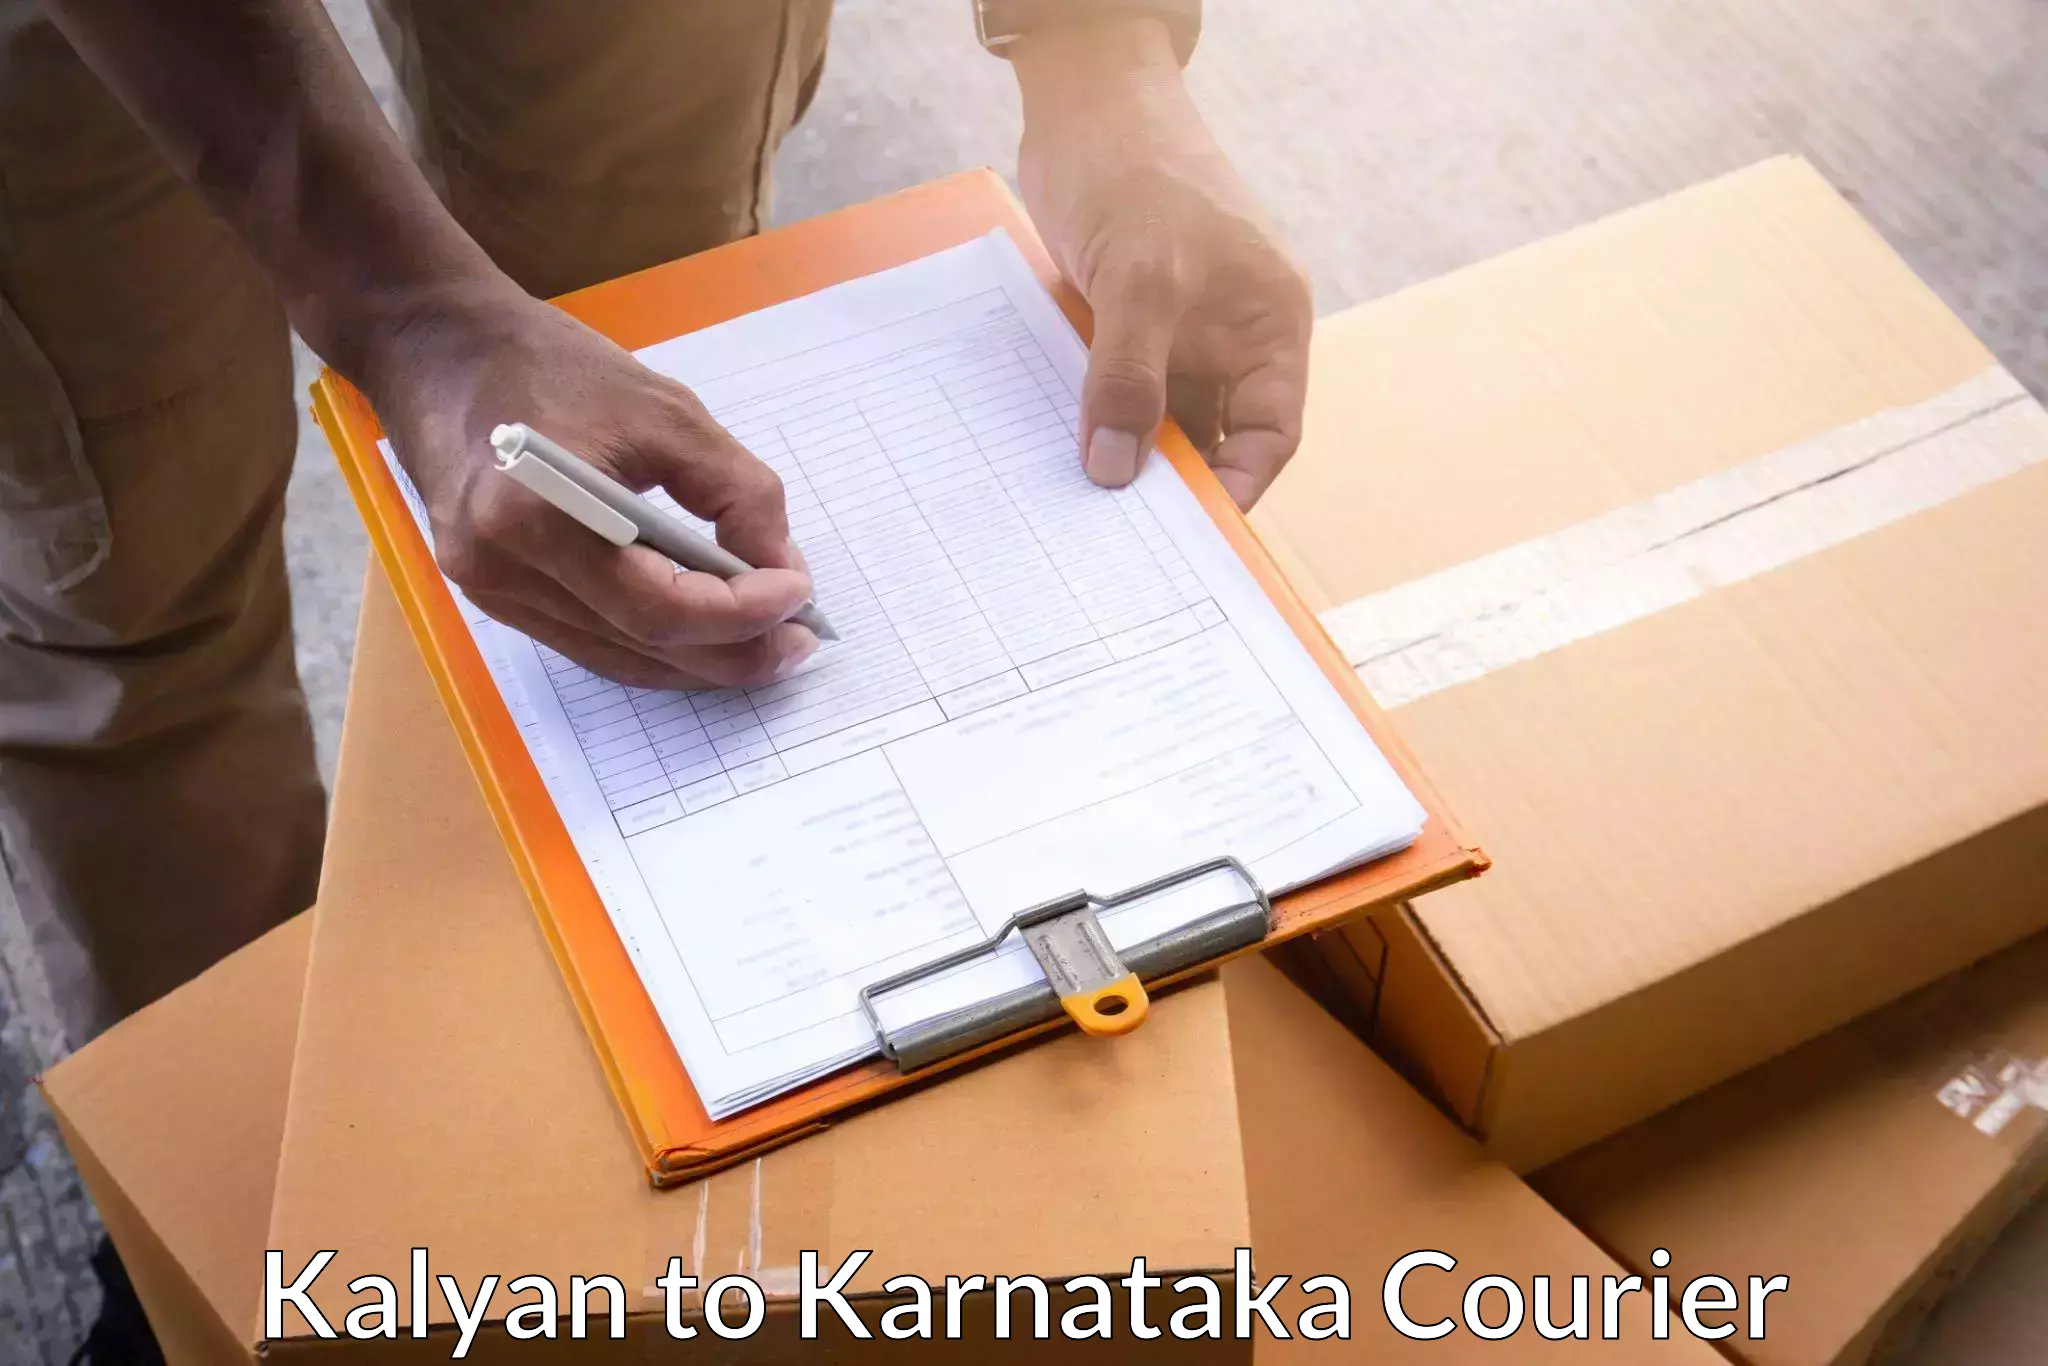 Versatile courier offerings in Kalyan to Eedu